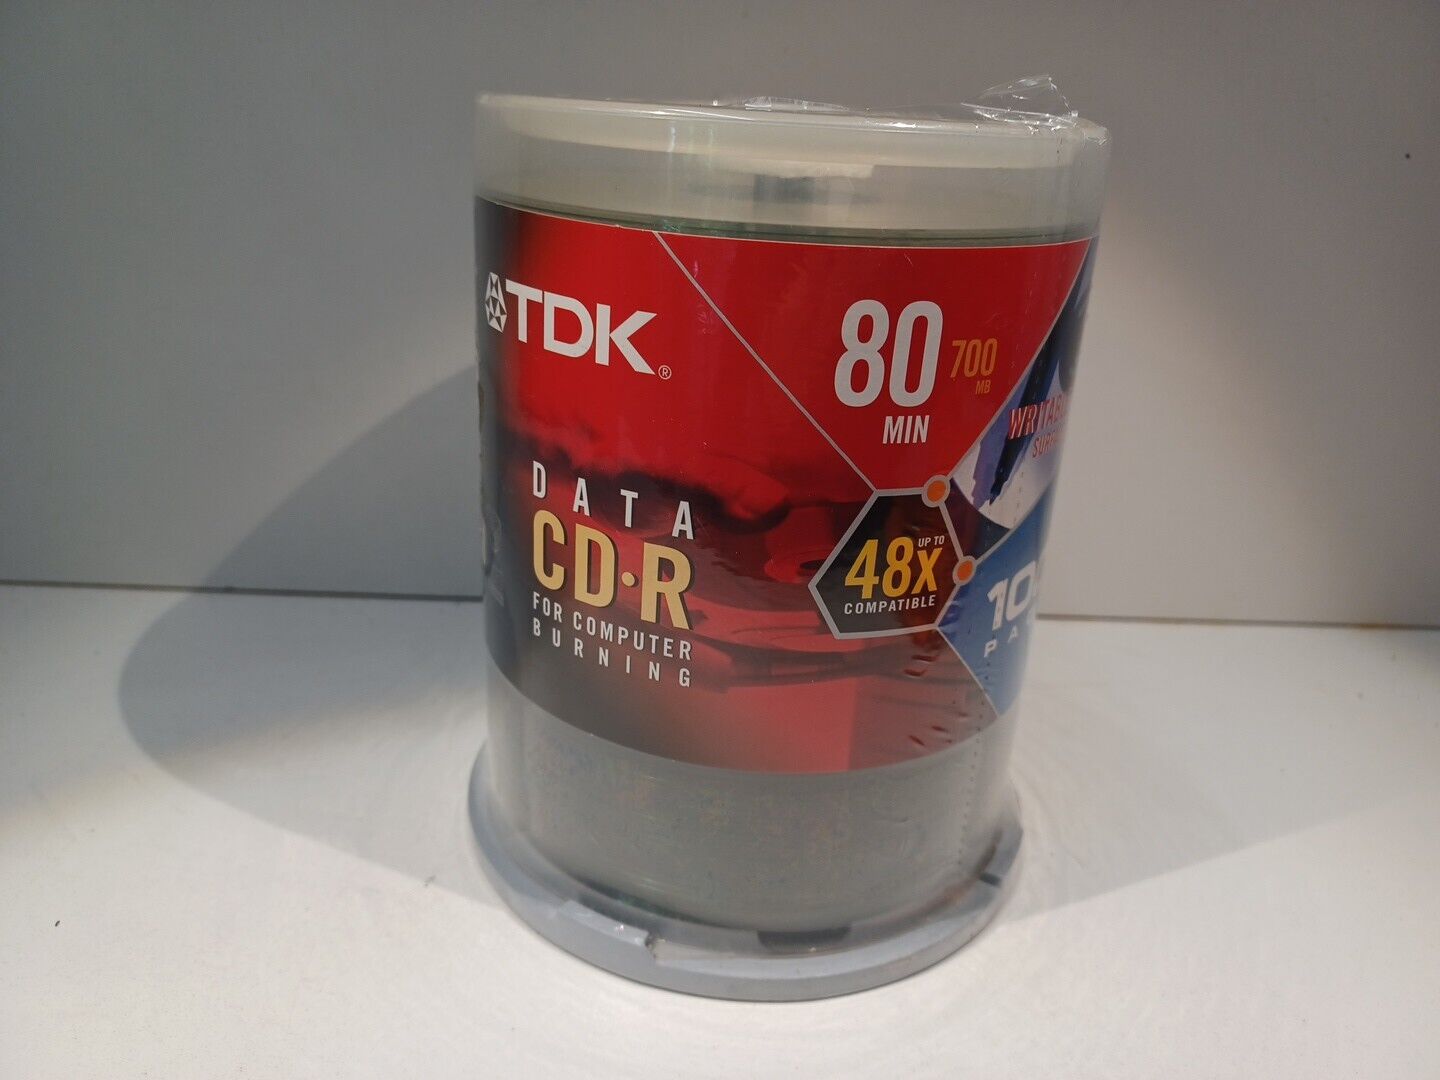 TDK Data CD-R 48X 80min 700MB 100 Pack New Sealed